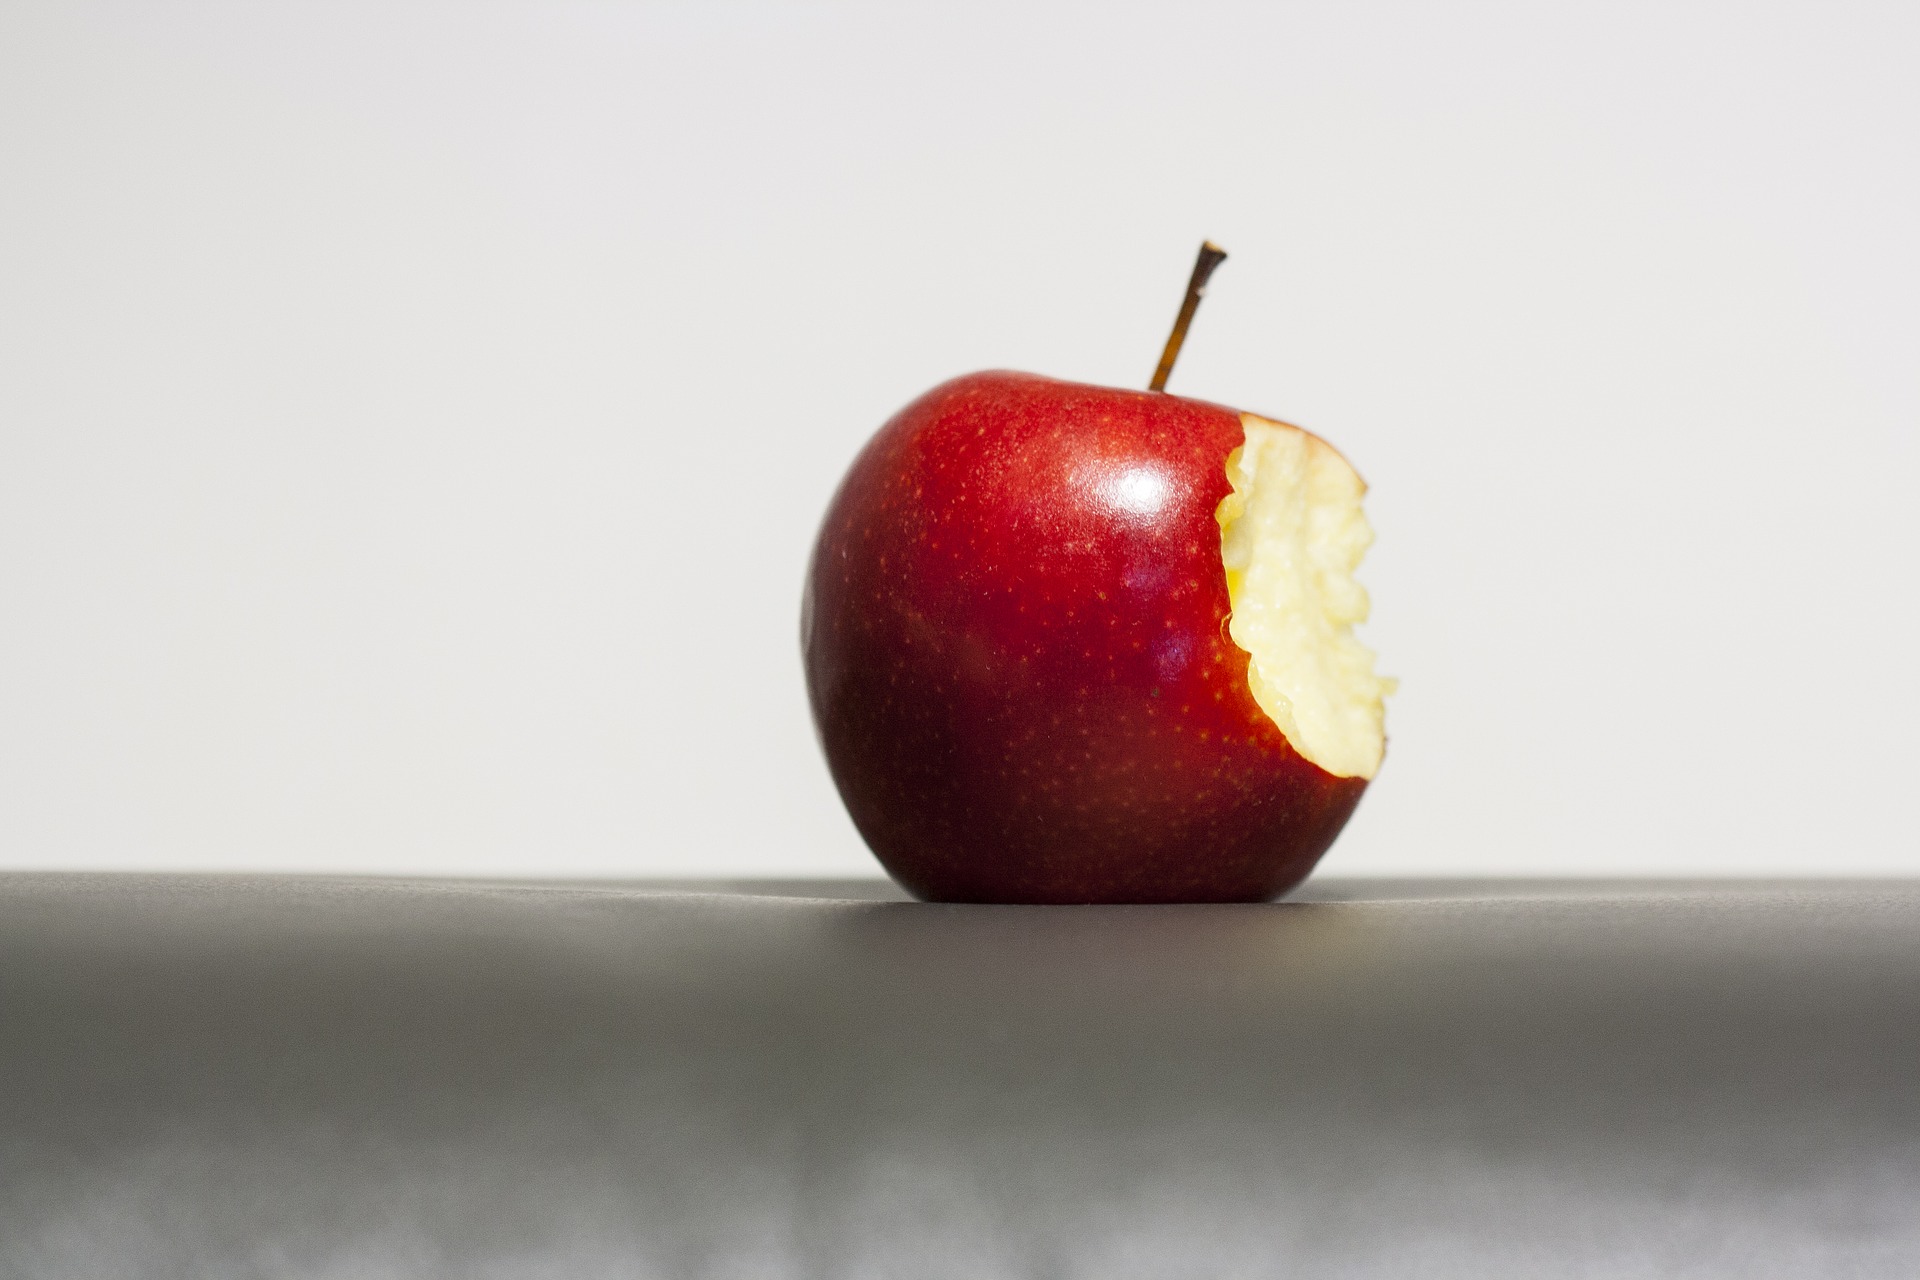 Zatiaľ čo jablko denne vás pravdepodobne neuchráni pred chytením nepríjemnej nádchy, množstvo štúdií naznačuje, že by mohlo priniesť omnoho väčšie zdravotné výhody. Výskumníci z Oxfordskej univerzity odhadujú, že ak by každý dospelý starší ako 50 rokov jedol jedno jablko denne, mohlo by to  oddialiť  alebo zabrániť približne 8 500 cievnych úmrtiam z infarktu a mŕtvice každý rok v Británii. Vedci z Cornell tiež zistili, že jedenie jabĺk - vďaka ich zdravým látkam, ako sú flavonoidy a antioxidanty - môže potlačiť vývoj rakoviny prsníka. 